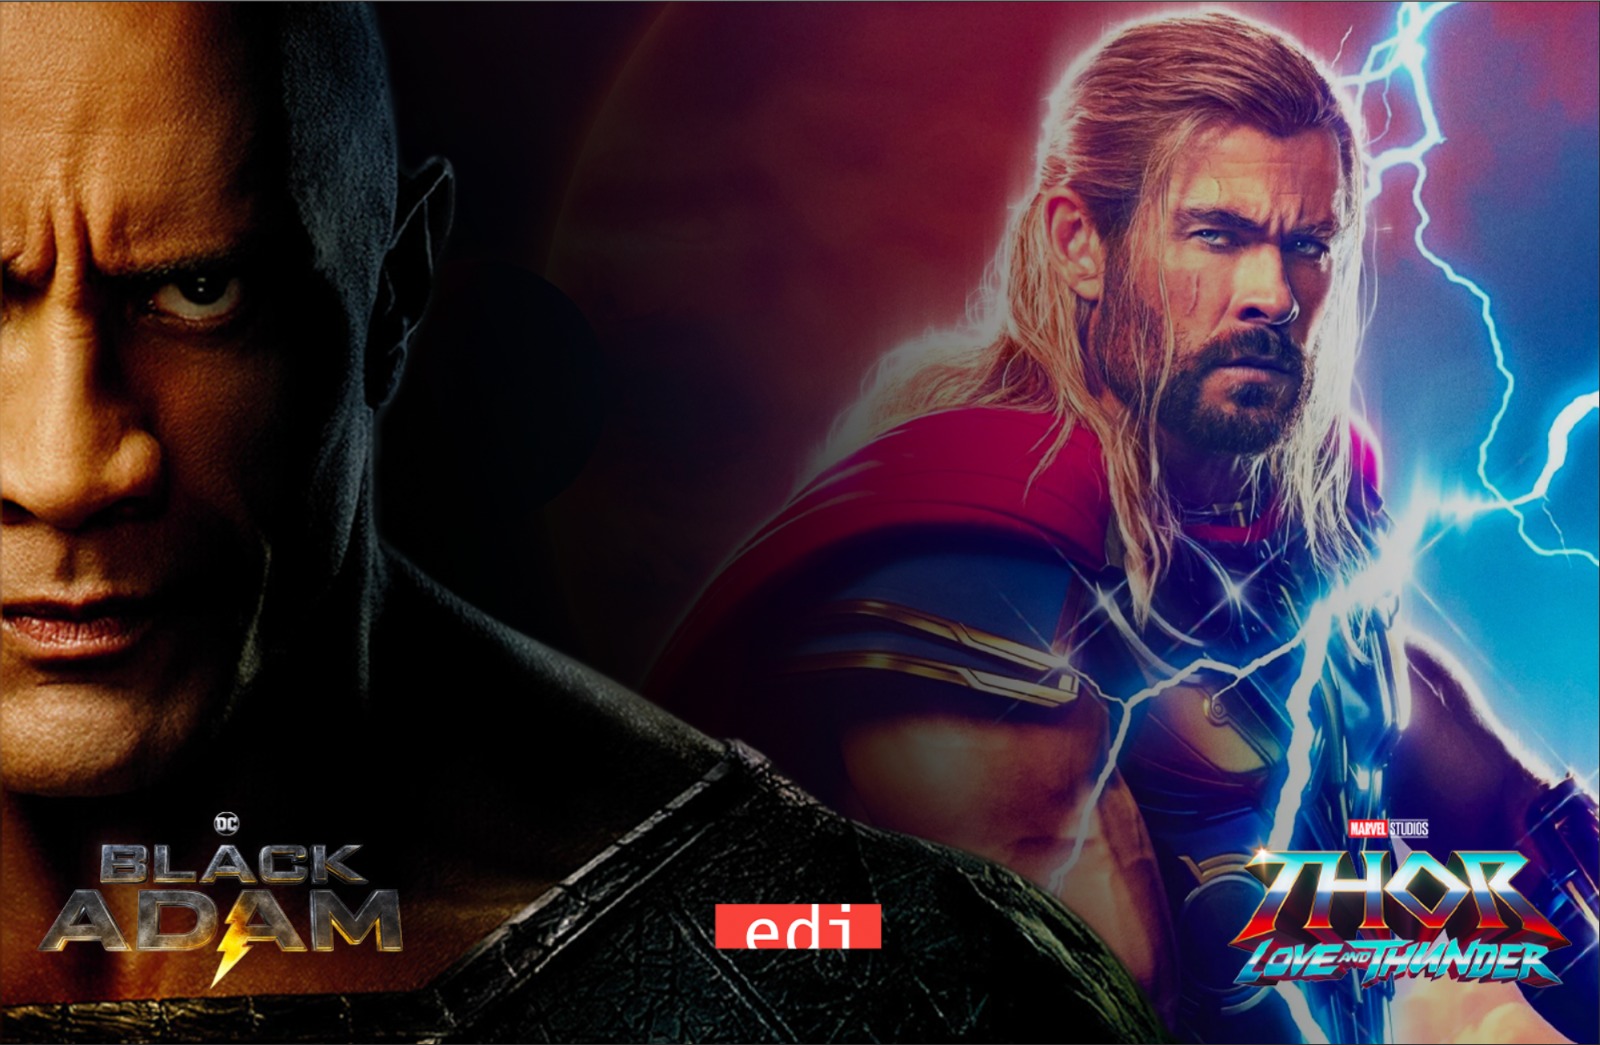 Comicon, arrivano i supereroi dei vfx: masterclass e panel su “Black Adam” e “Thor”